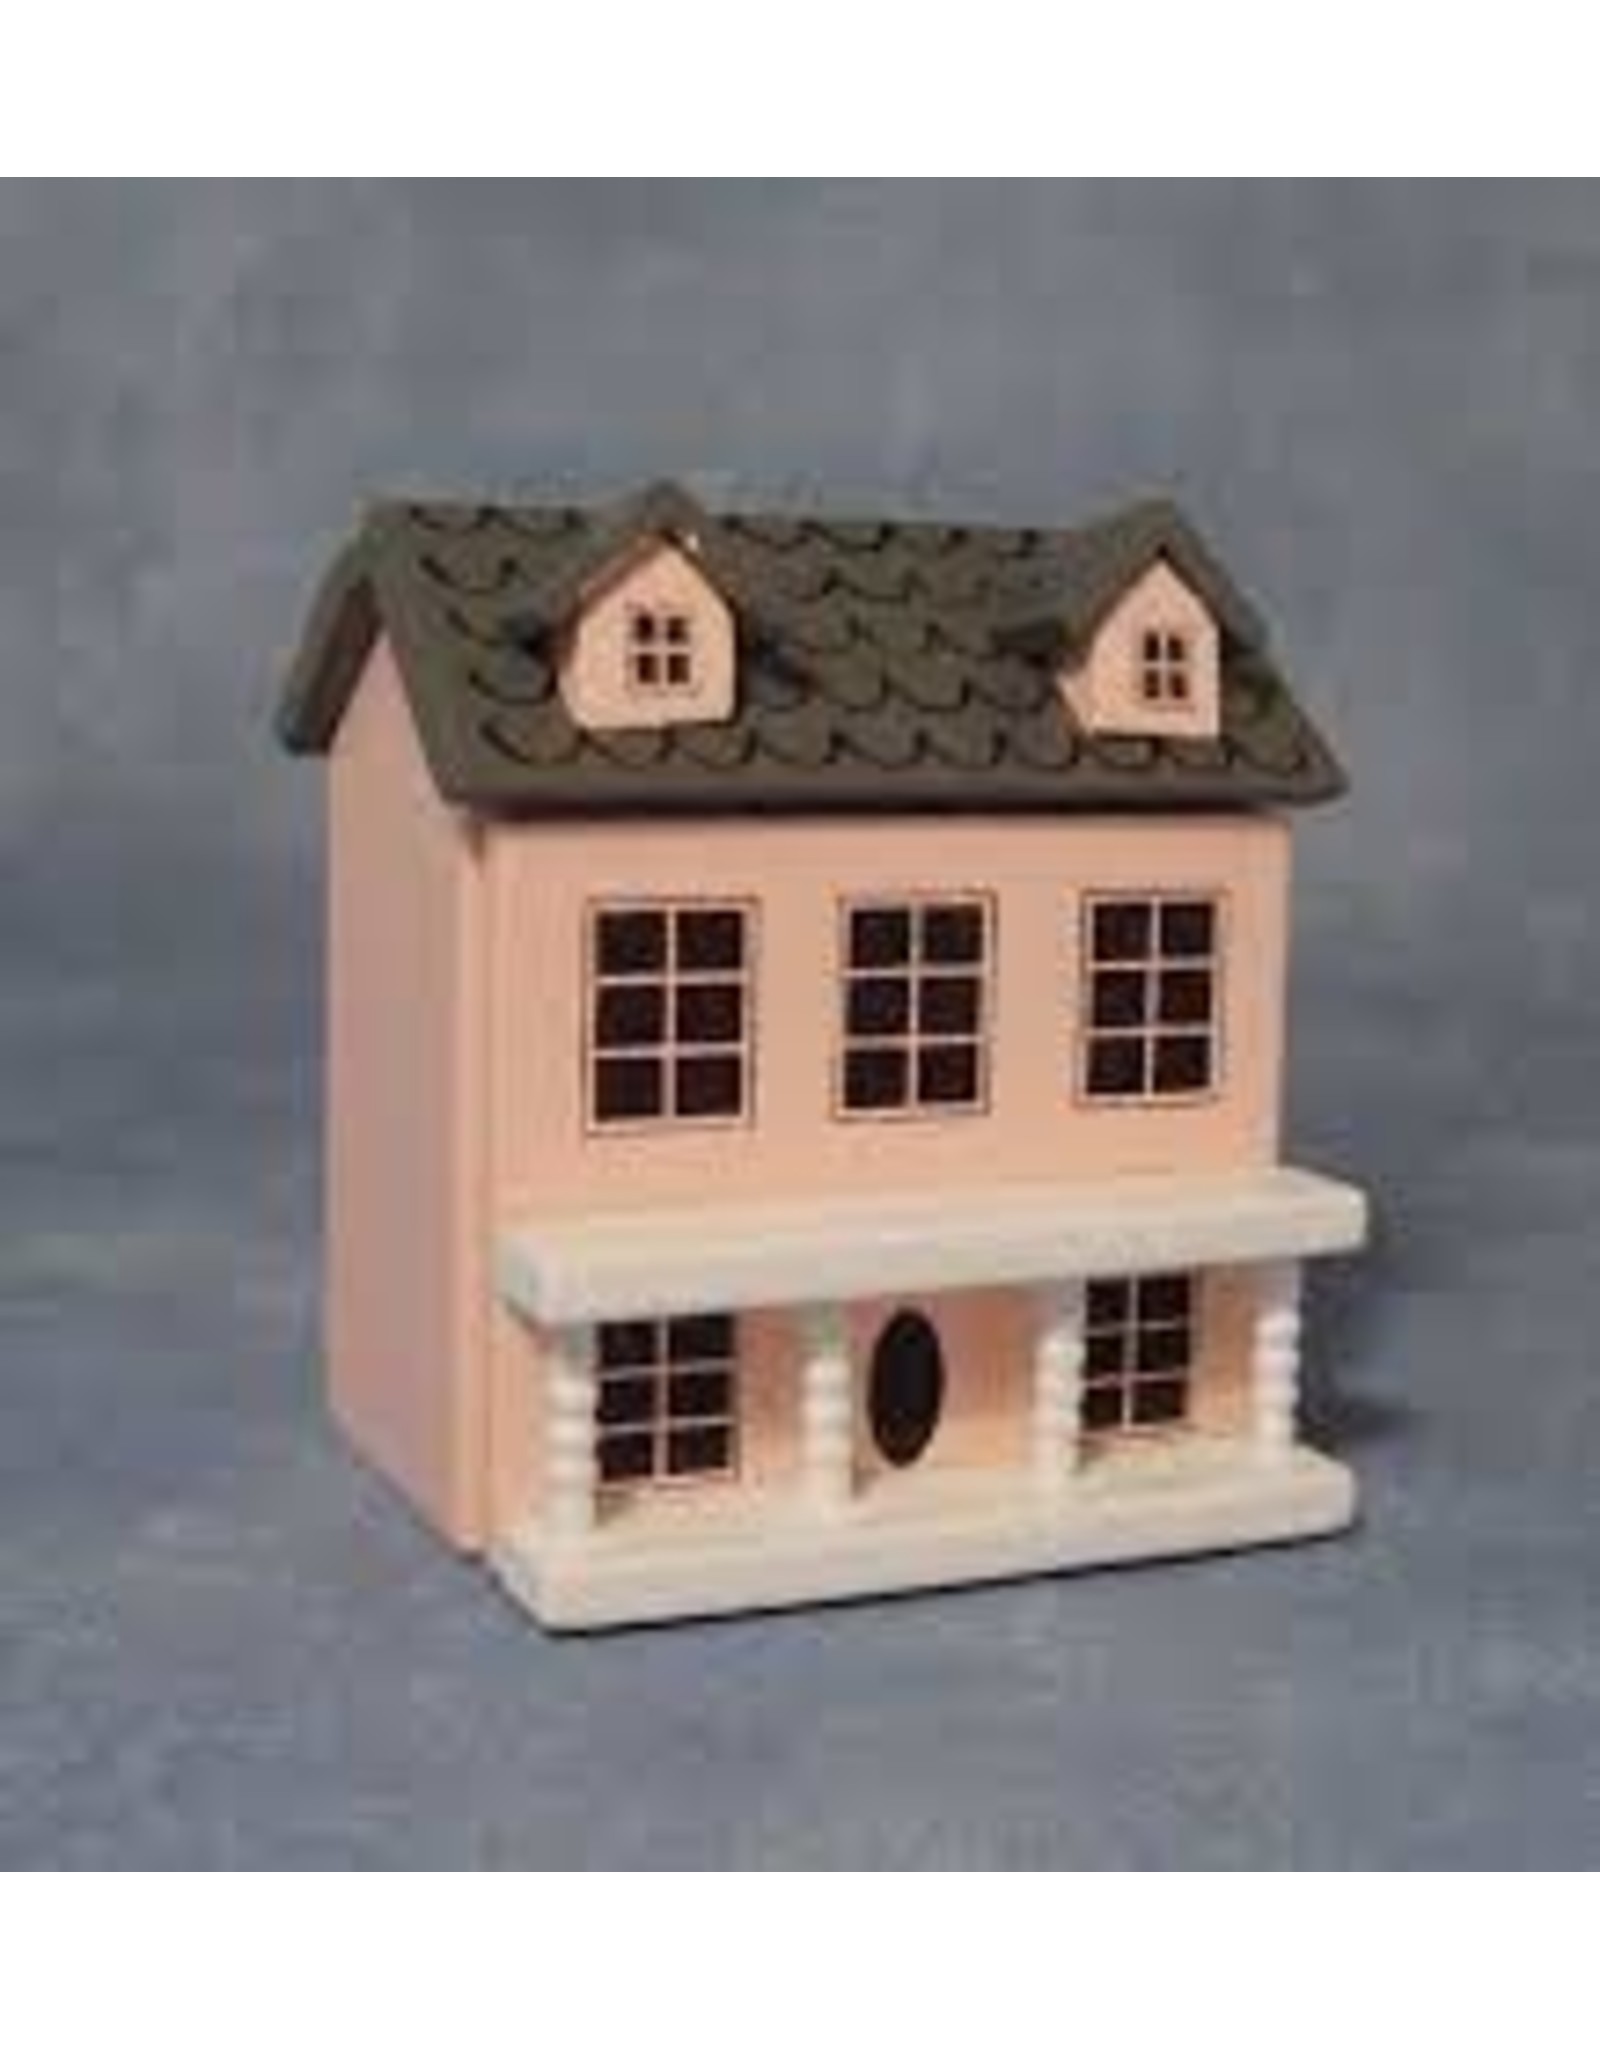 Maison  de poupée miniature ouvrante